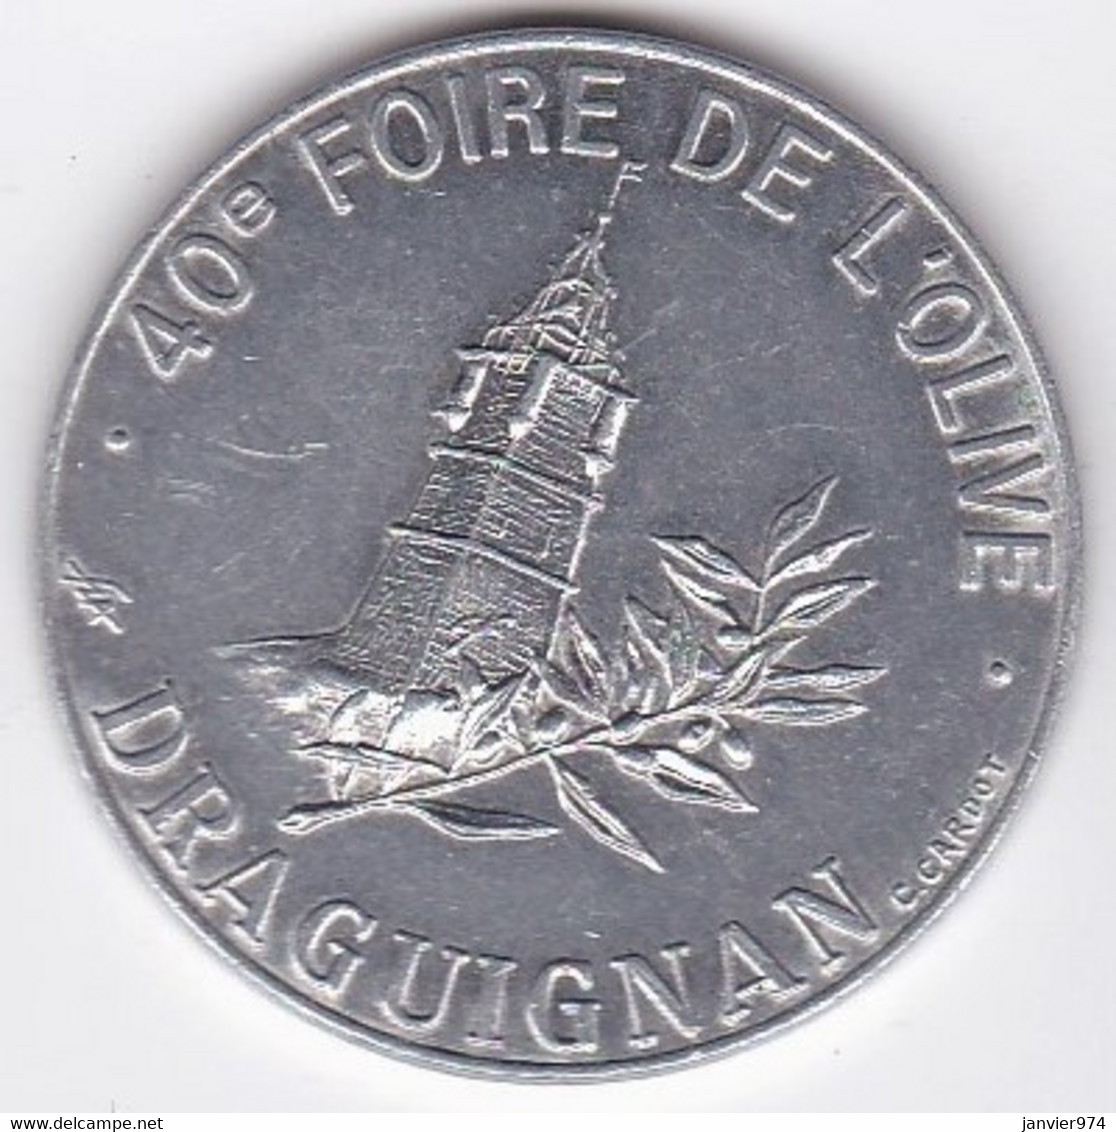 Draguignan 1 Ecu 1993, Europe Avec Les Dracénois, 40e Foire De L’Olive, En Aluminium - Euros Des Villes